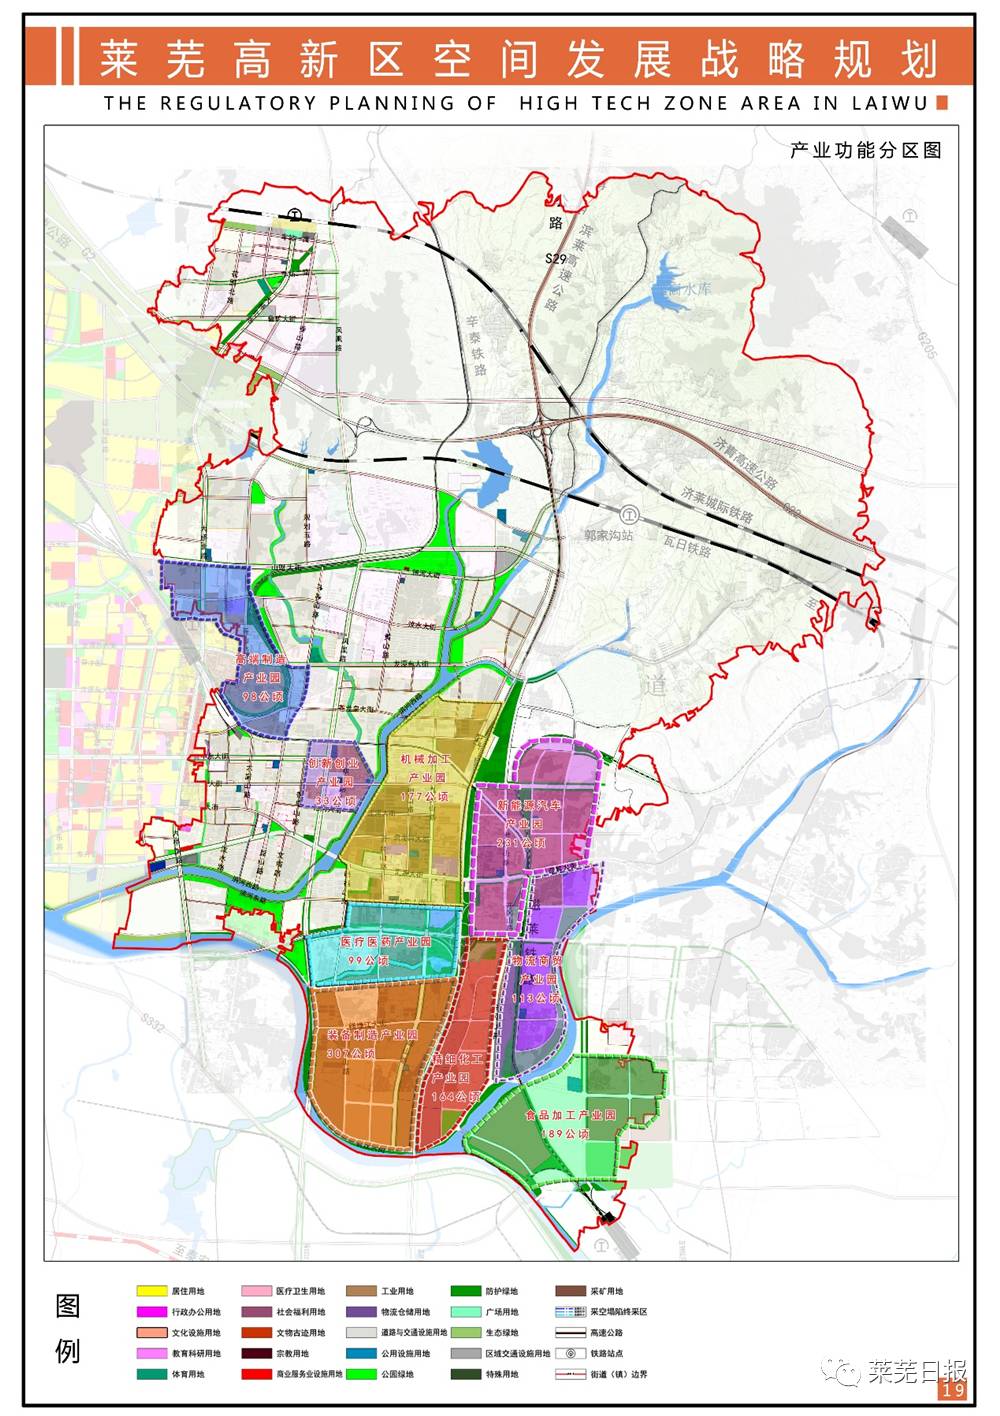 莱芜高新区最新规划来了!将成为全市发展的关键性区域!